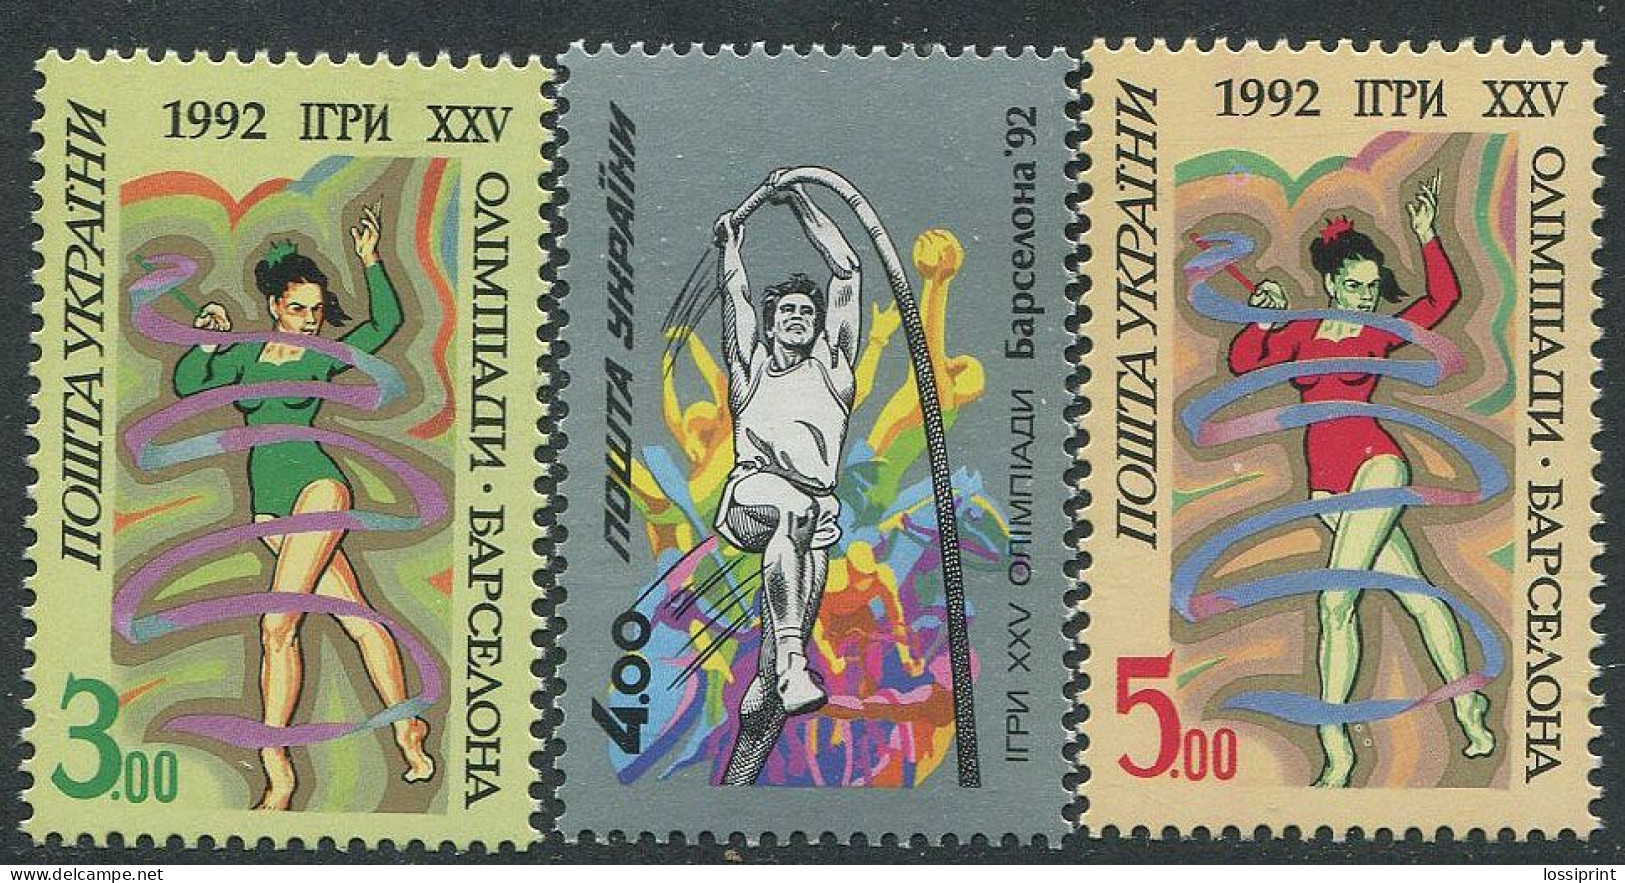 Ukraine:Ukraina:Unused Stamps Serie Barcelona XXV Olympic Games 1992, MNH - Ukraine